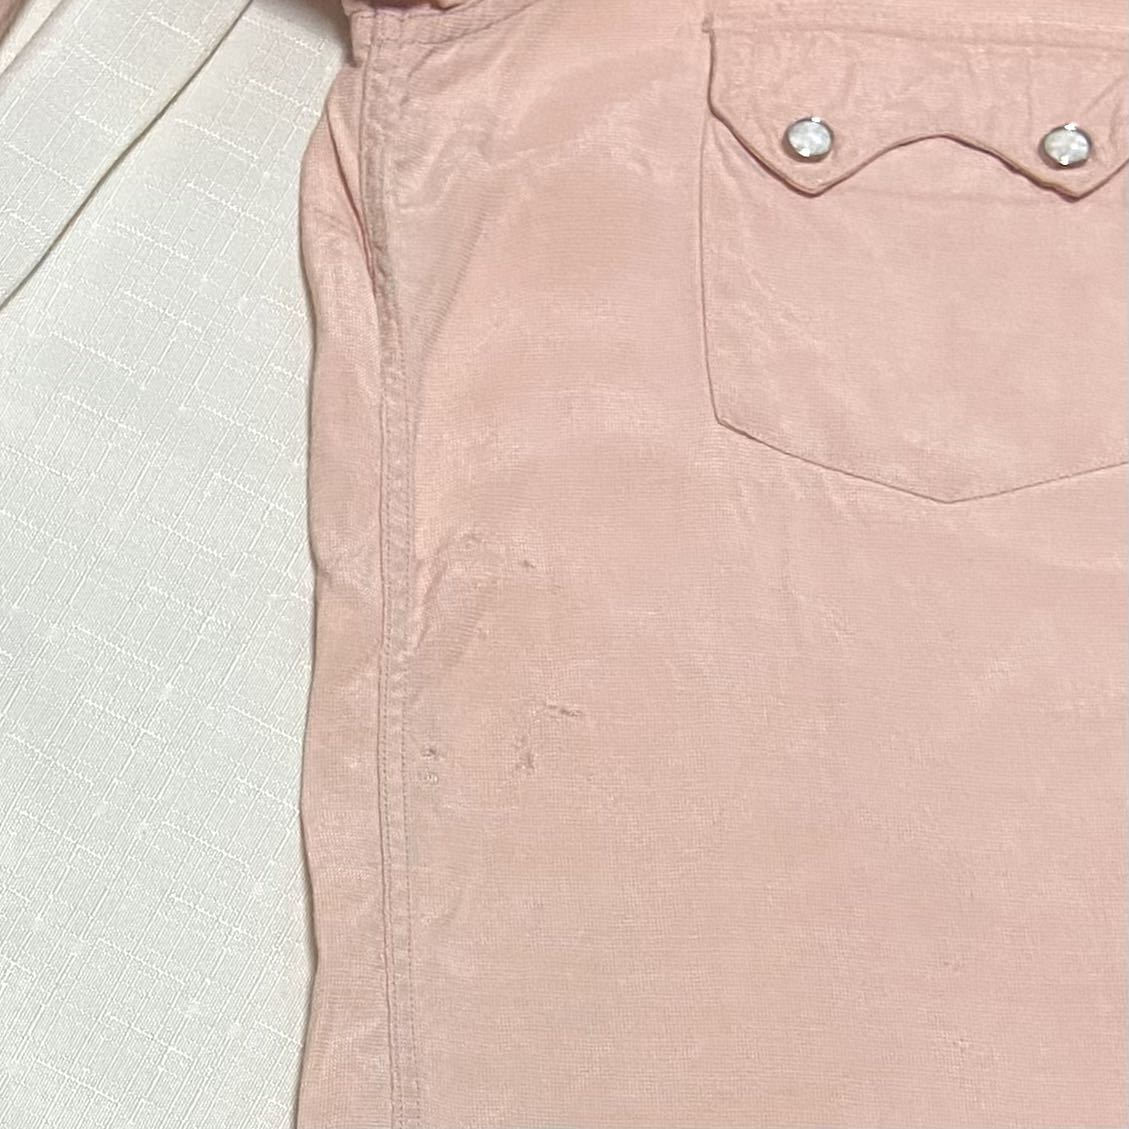 ピンク 50s ビンテージ E&W THE PLAINS レーヨン シャツ 無地 単色 USA製 オリジナル レアカラー ヴィンテージ 60s 50年代 ロカビリー 古着_右脇腹のあたりに少しダメージがあります。